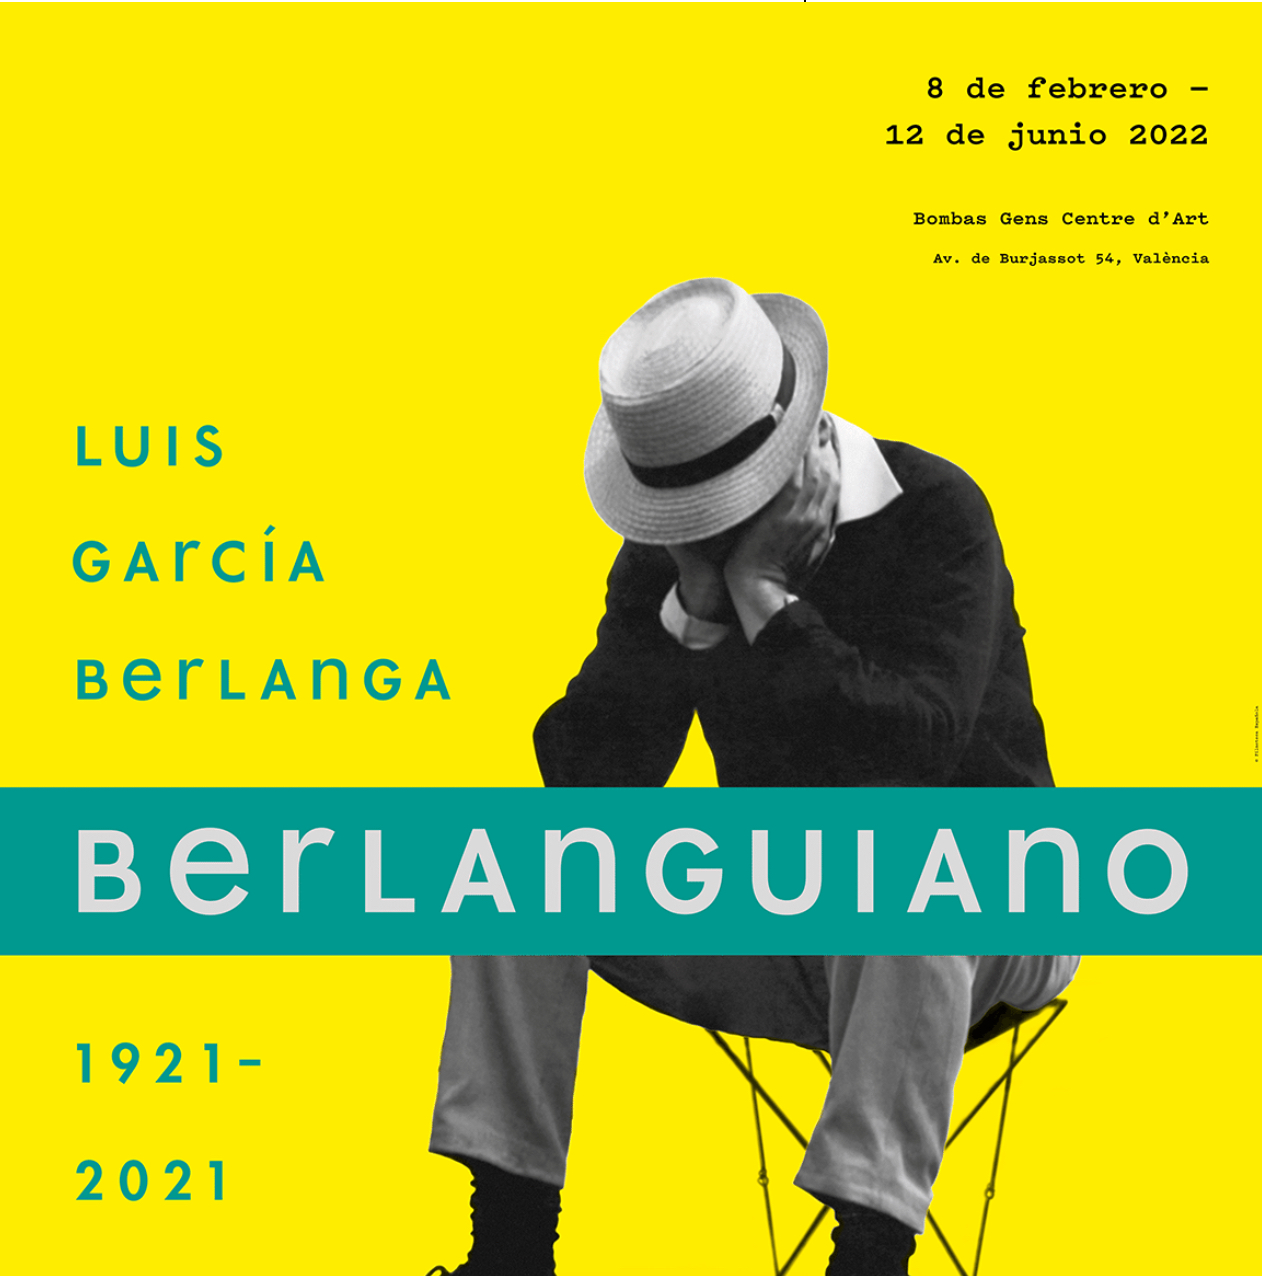 BERLANGUIANO. LUIS GARCÍA BERLANGA 1921-2021 Imagen de portada